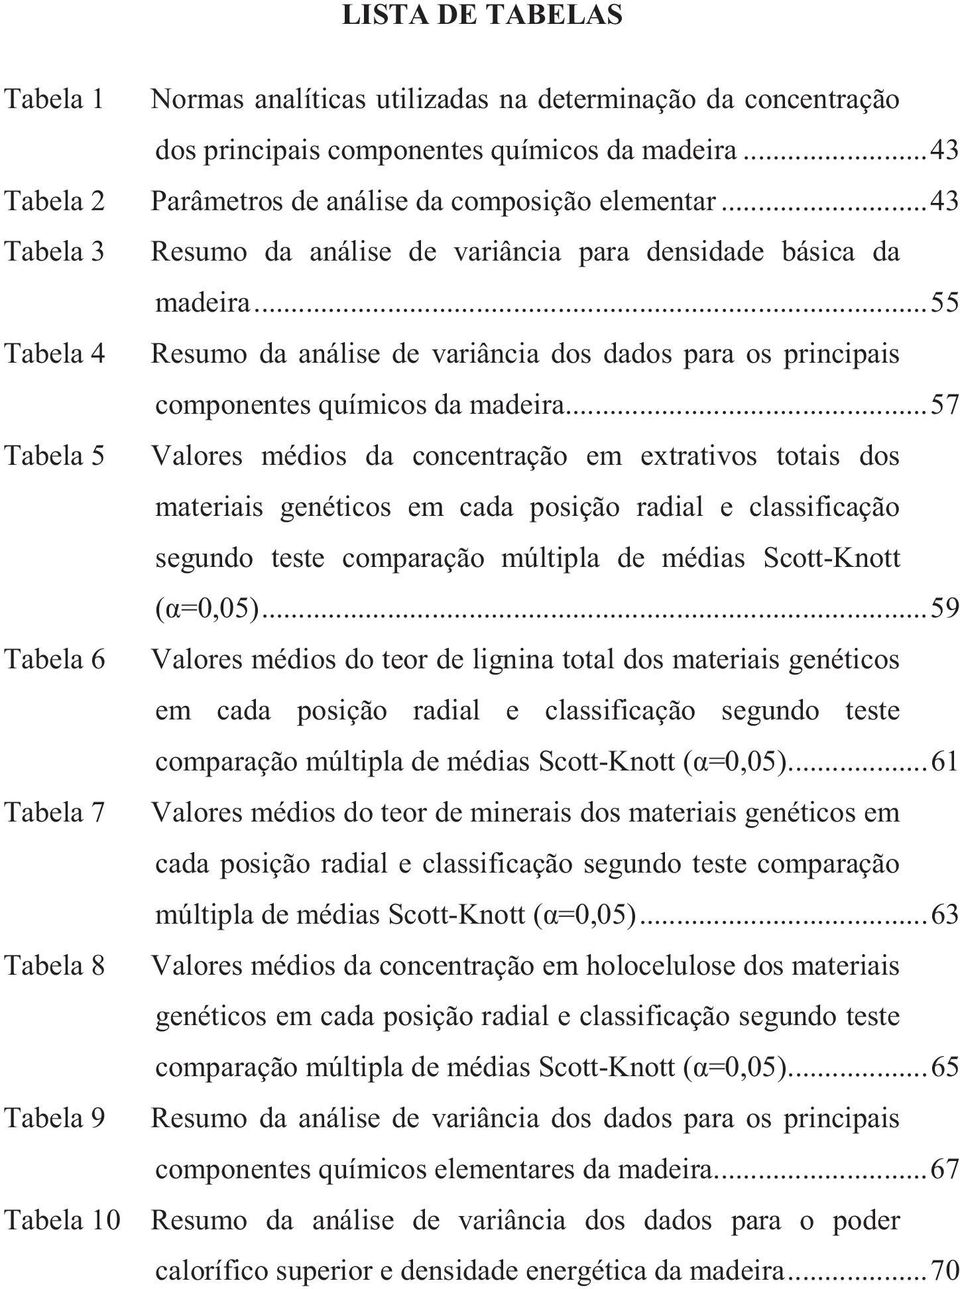 .. 57 Tabela 5 Valores médios da concentração em extrativos totais dos materiais genéticos em cada posição radial e classificação segundo teste comparação múltipla de médias Scott-Knott (α=0,05).